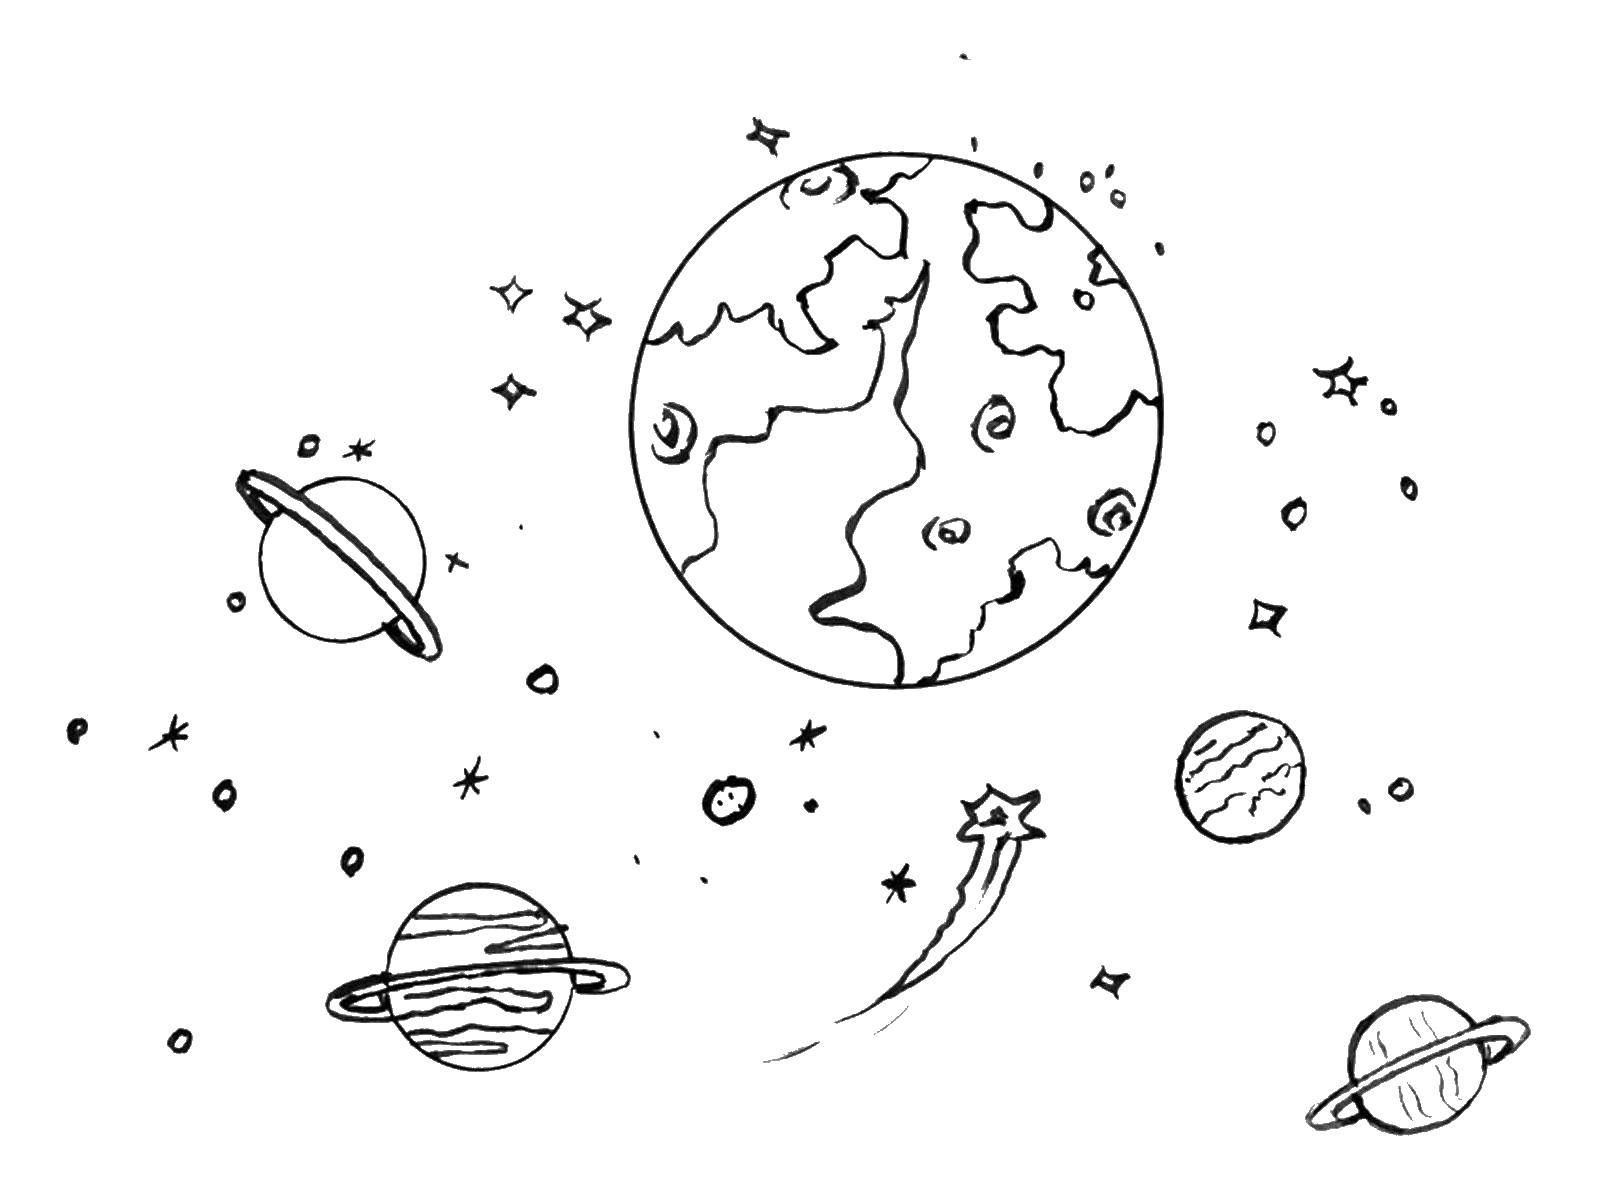 Опис: розмальовки  Космічний пейзаж. Категорія: Космічні розмальовки. Теги:  - Космос, планета, Всесвіт, Галактика.